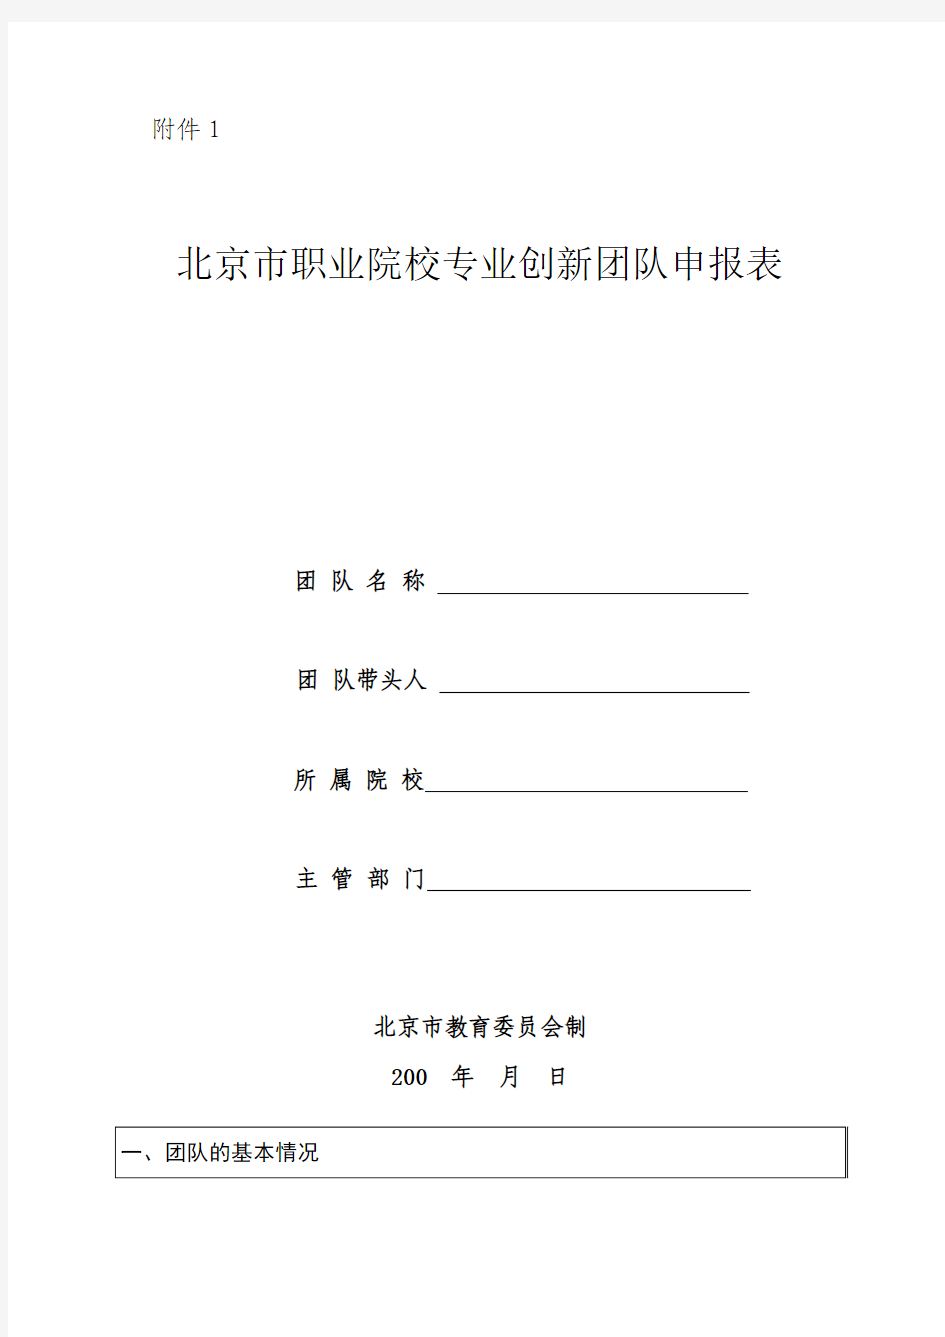 北京市职业院校专业创新团队申报表